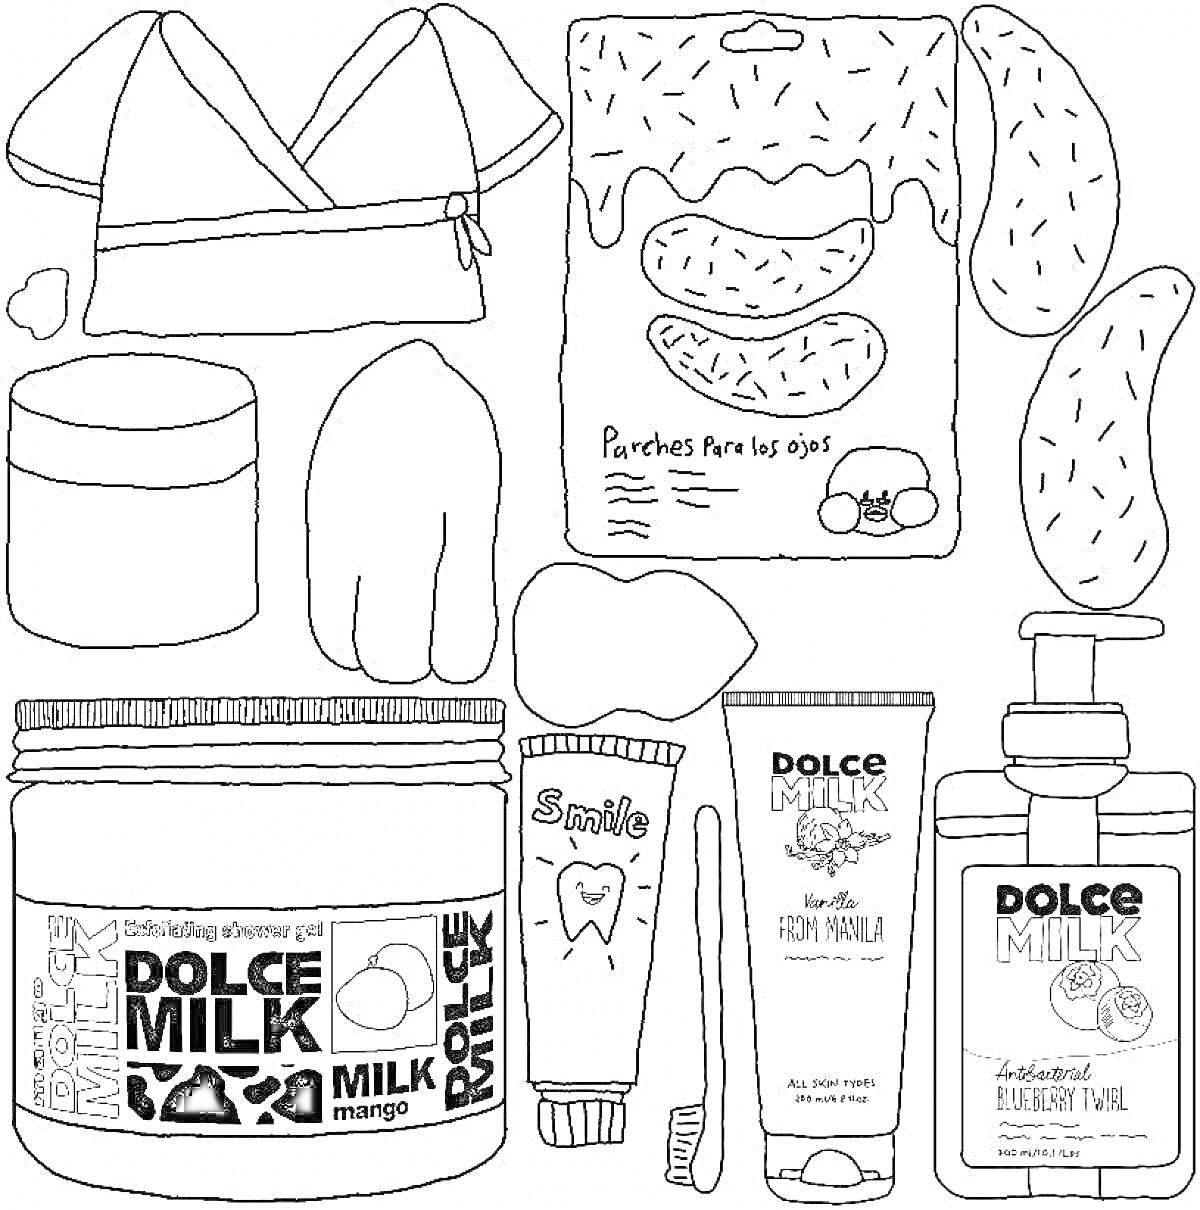 Dolce Milk. Элементы: Пижама, коробка патчей для глаз, две подушки, органическая баночка, бальзам для губ, зубная щетка, паста, тюбик крема для лица, флакон с мылом.